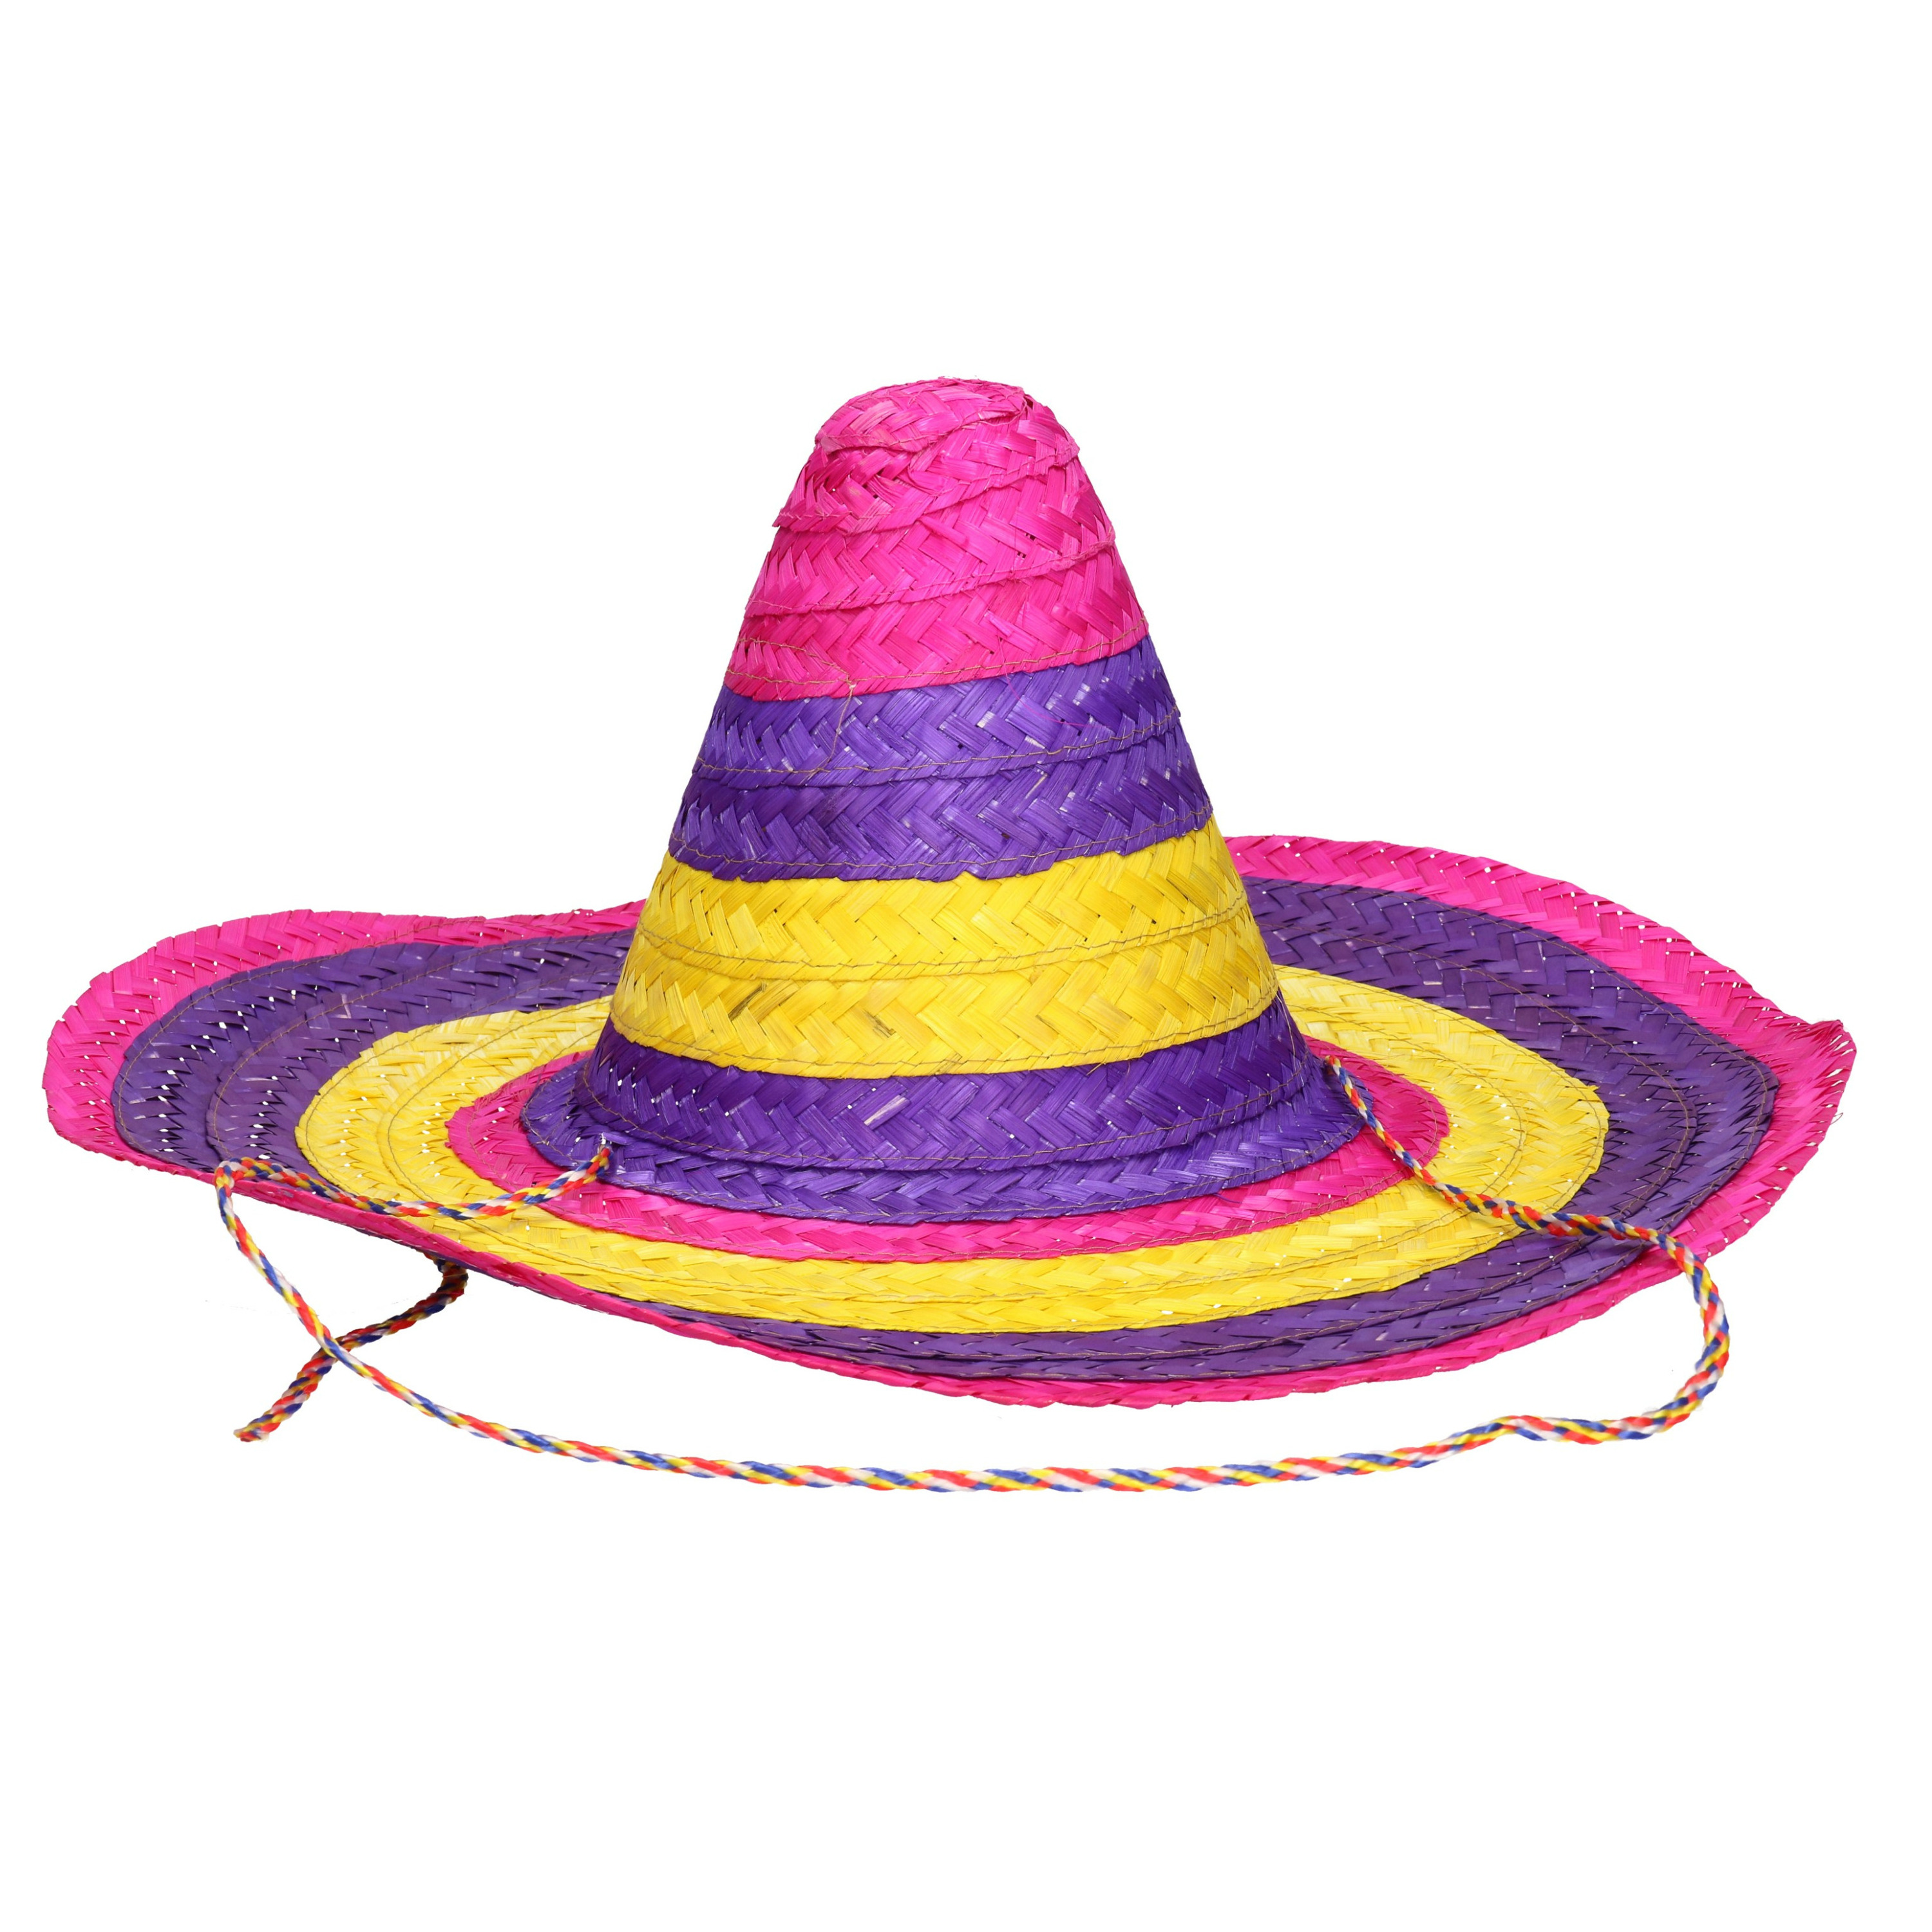 Grote gekleurde verkleed sombrero hoeden 50 cm